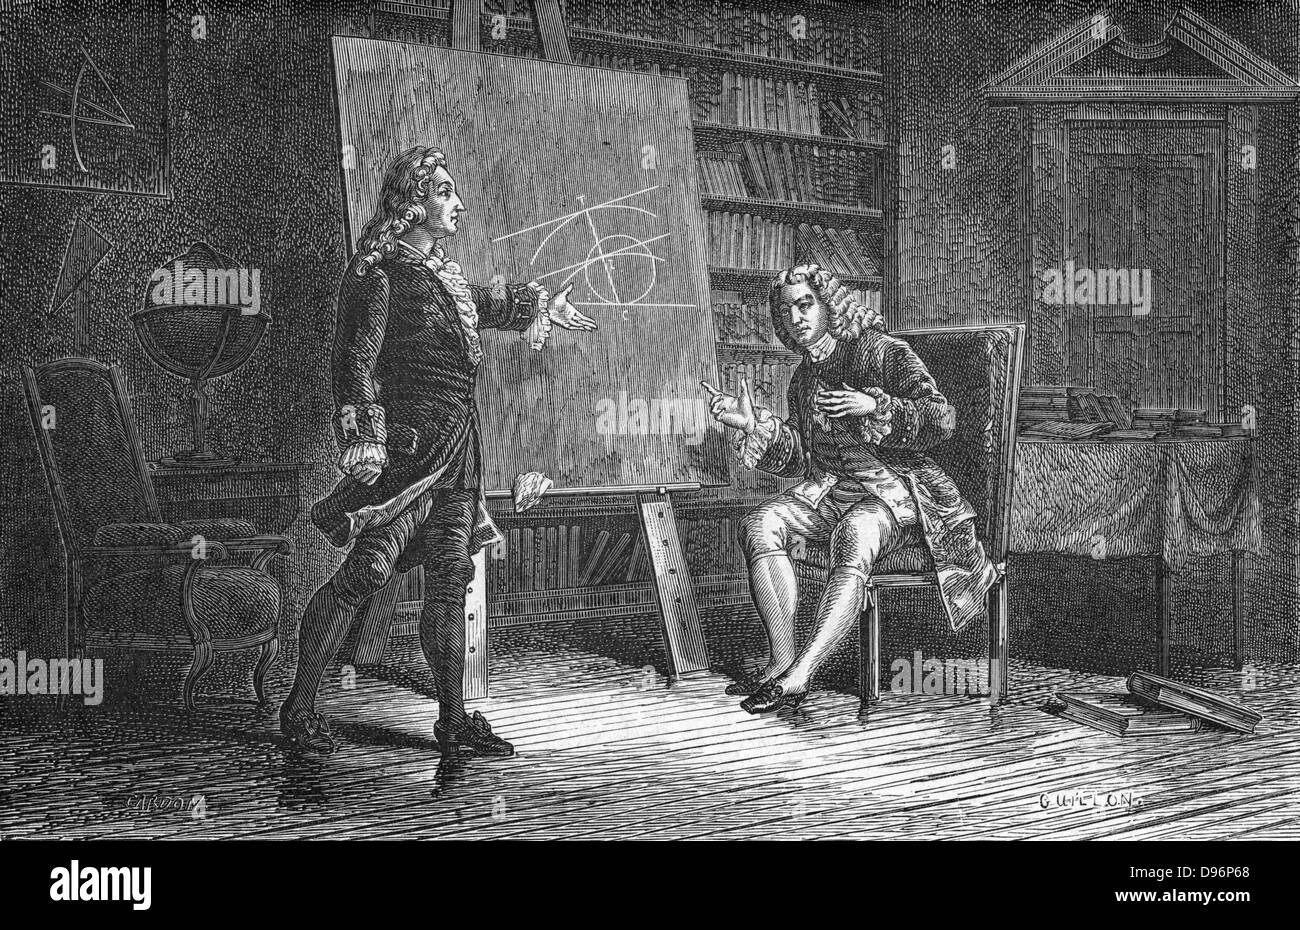 Jacques e Jean Bernoulli lavorando su problemi geometrici. Jacques (Jakob) Bernoulli (1654-1705) e suo fratello Jean (Johann) Bernoulli (1667-1748) erano membri della famiglia Bernoulli svizzero dei matematici. Incisione, Paris, 1874. Foto Stock